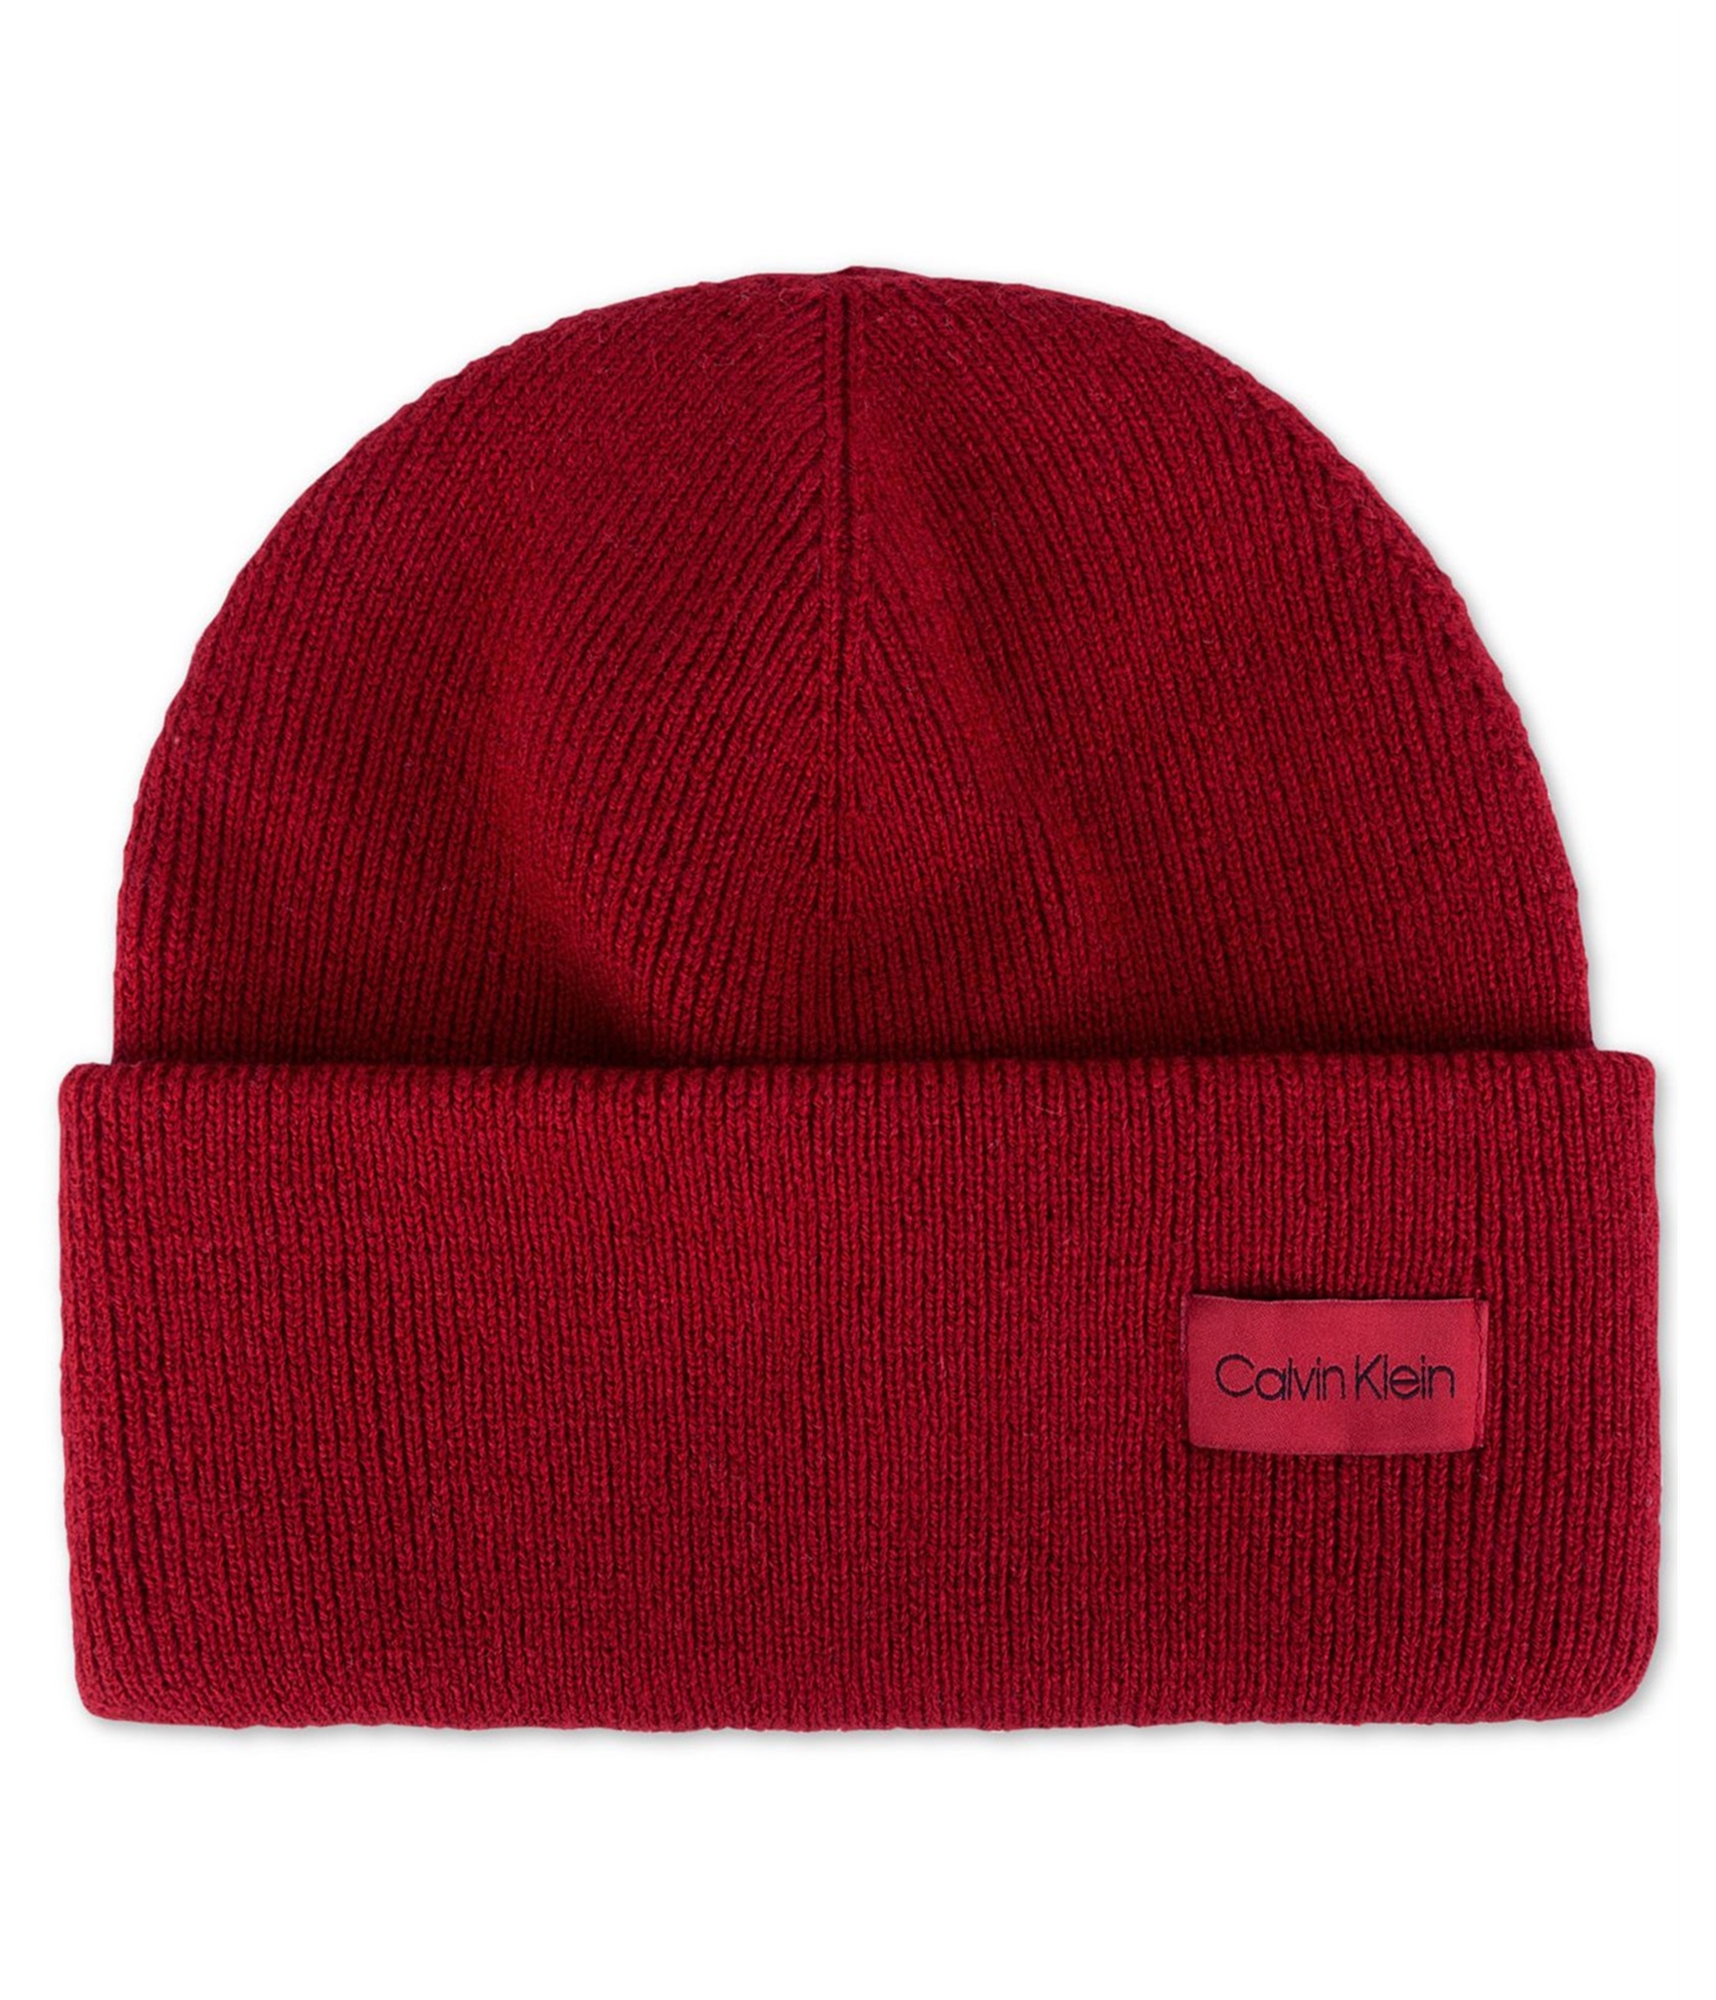 Calvin Klein Mens Cuffed Beanie Hat, Red, One Size | eBay